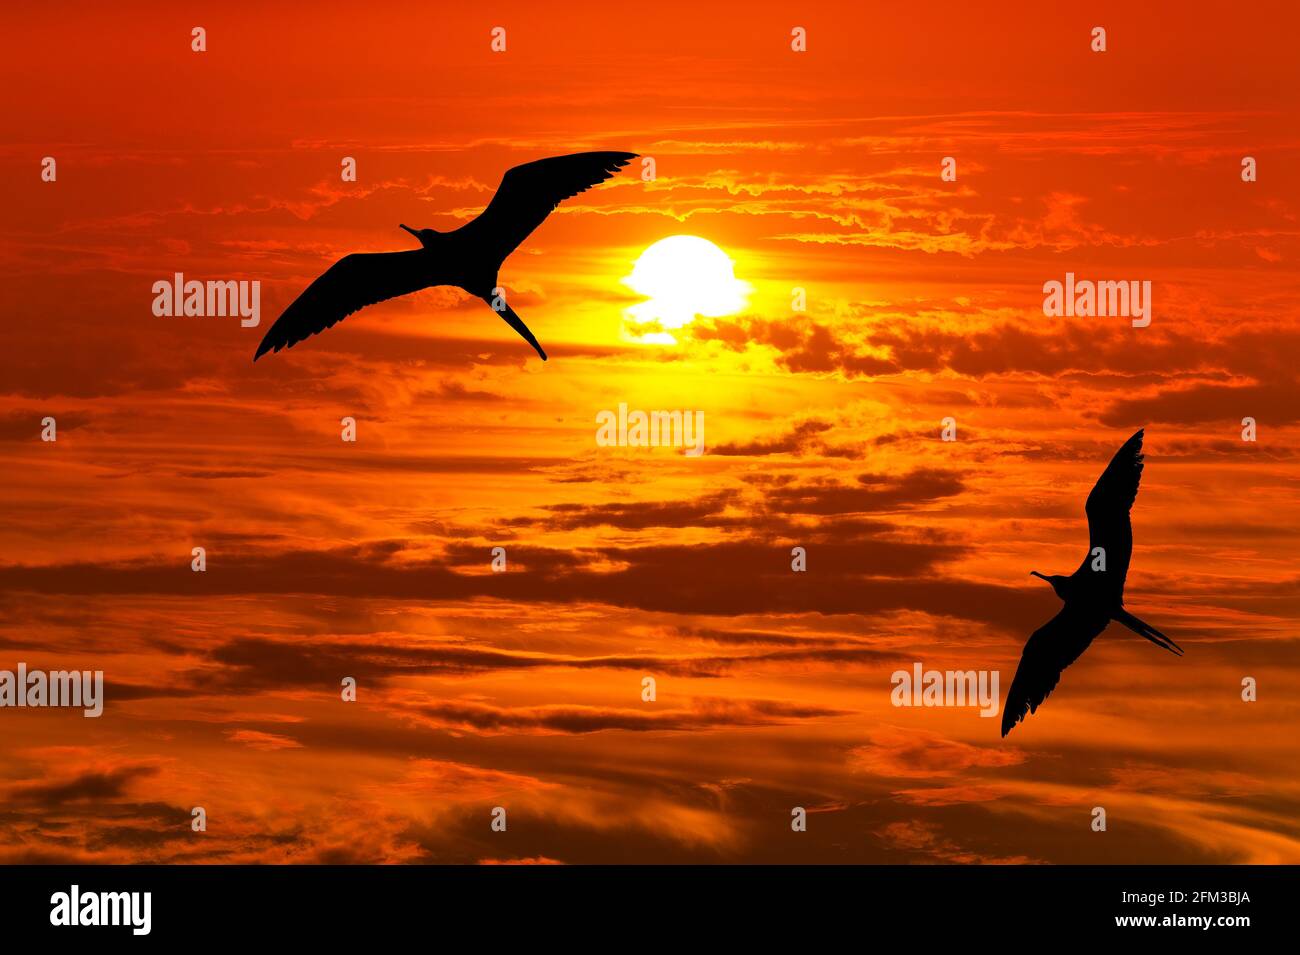 Deux oiseaux les oiseaux volantes sont silhouettés contre UN orange vif Coucher de soleil Banque D'Images